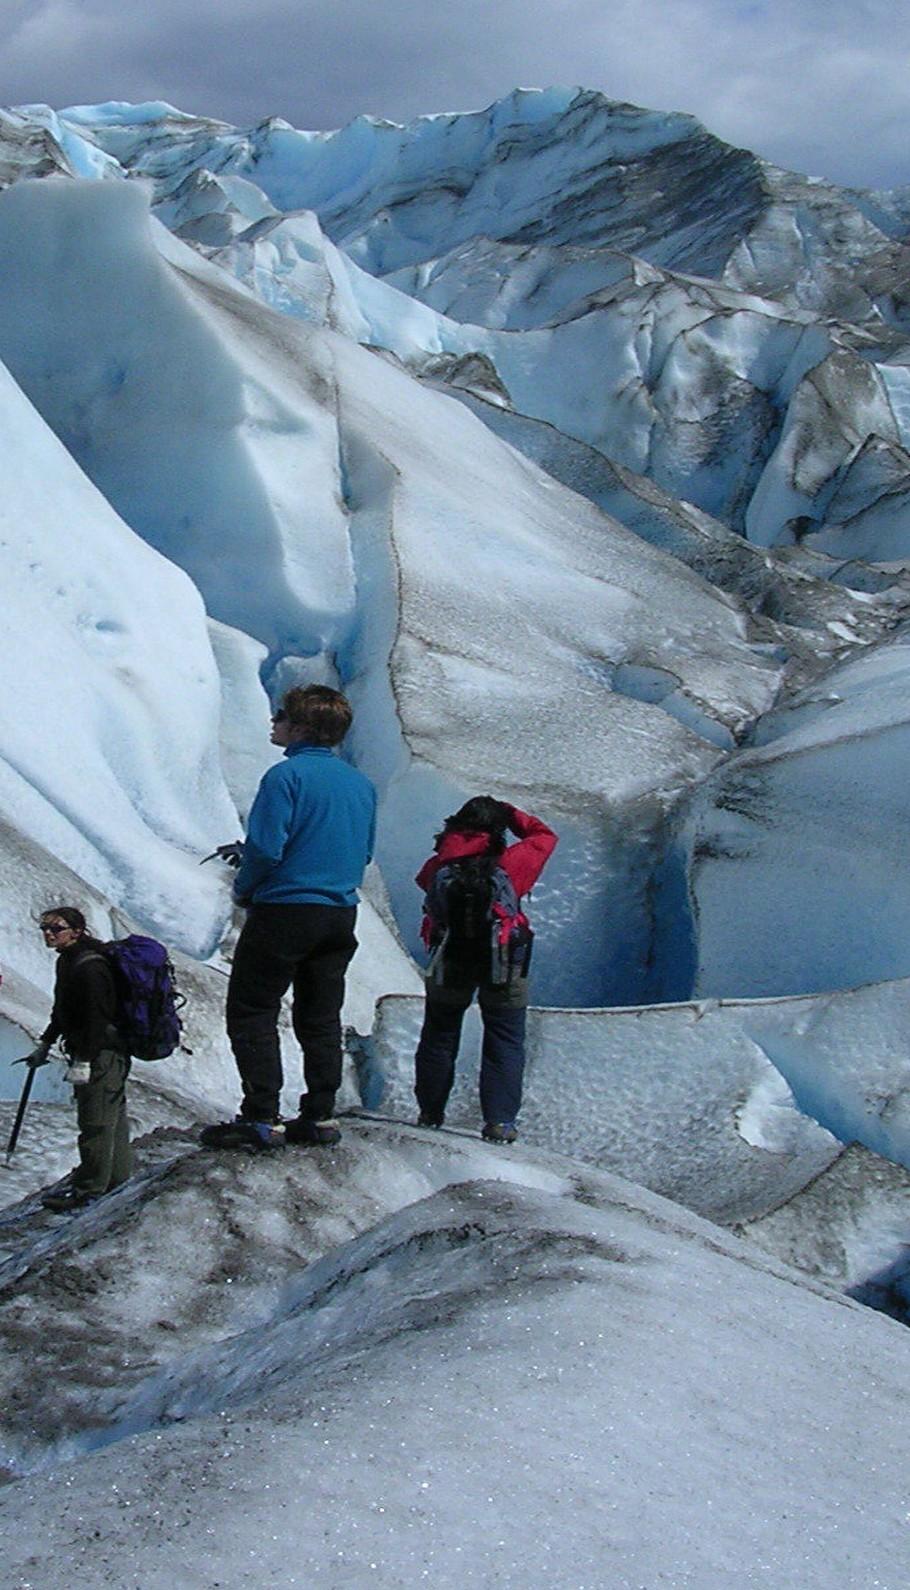 Voyage sur-mesure, Le Parc National des Glaciers